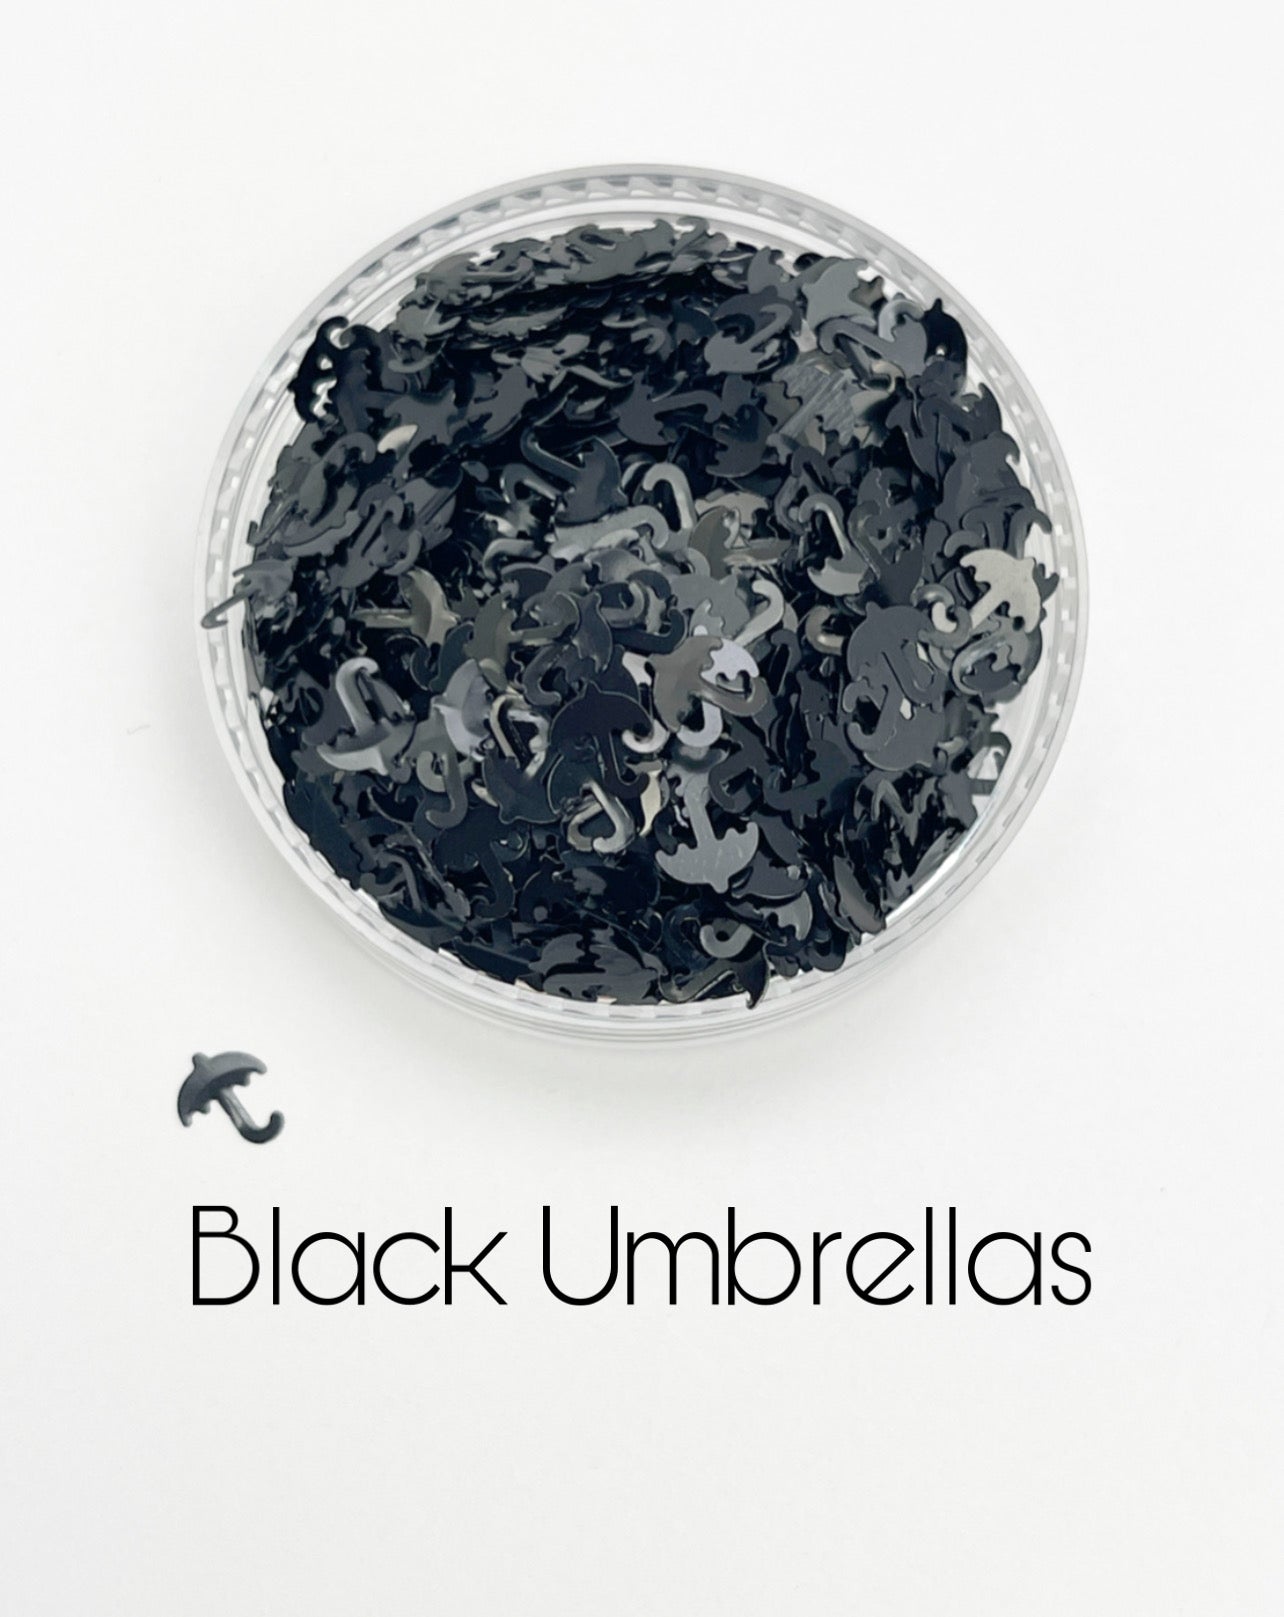 G0379 Black Umbrellas